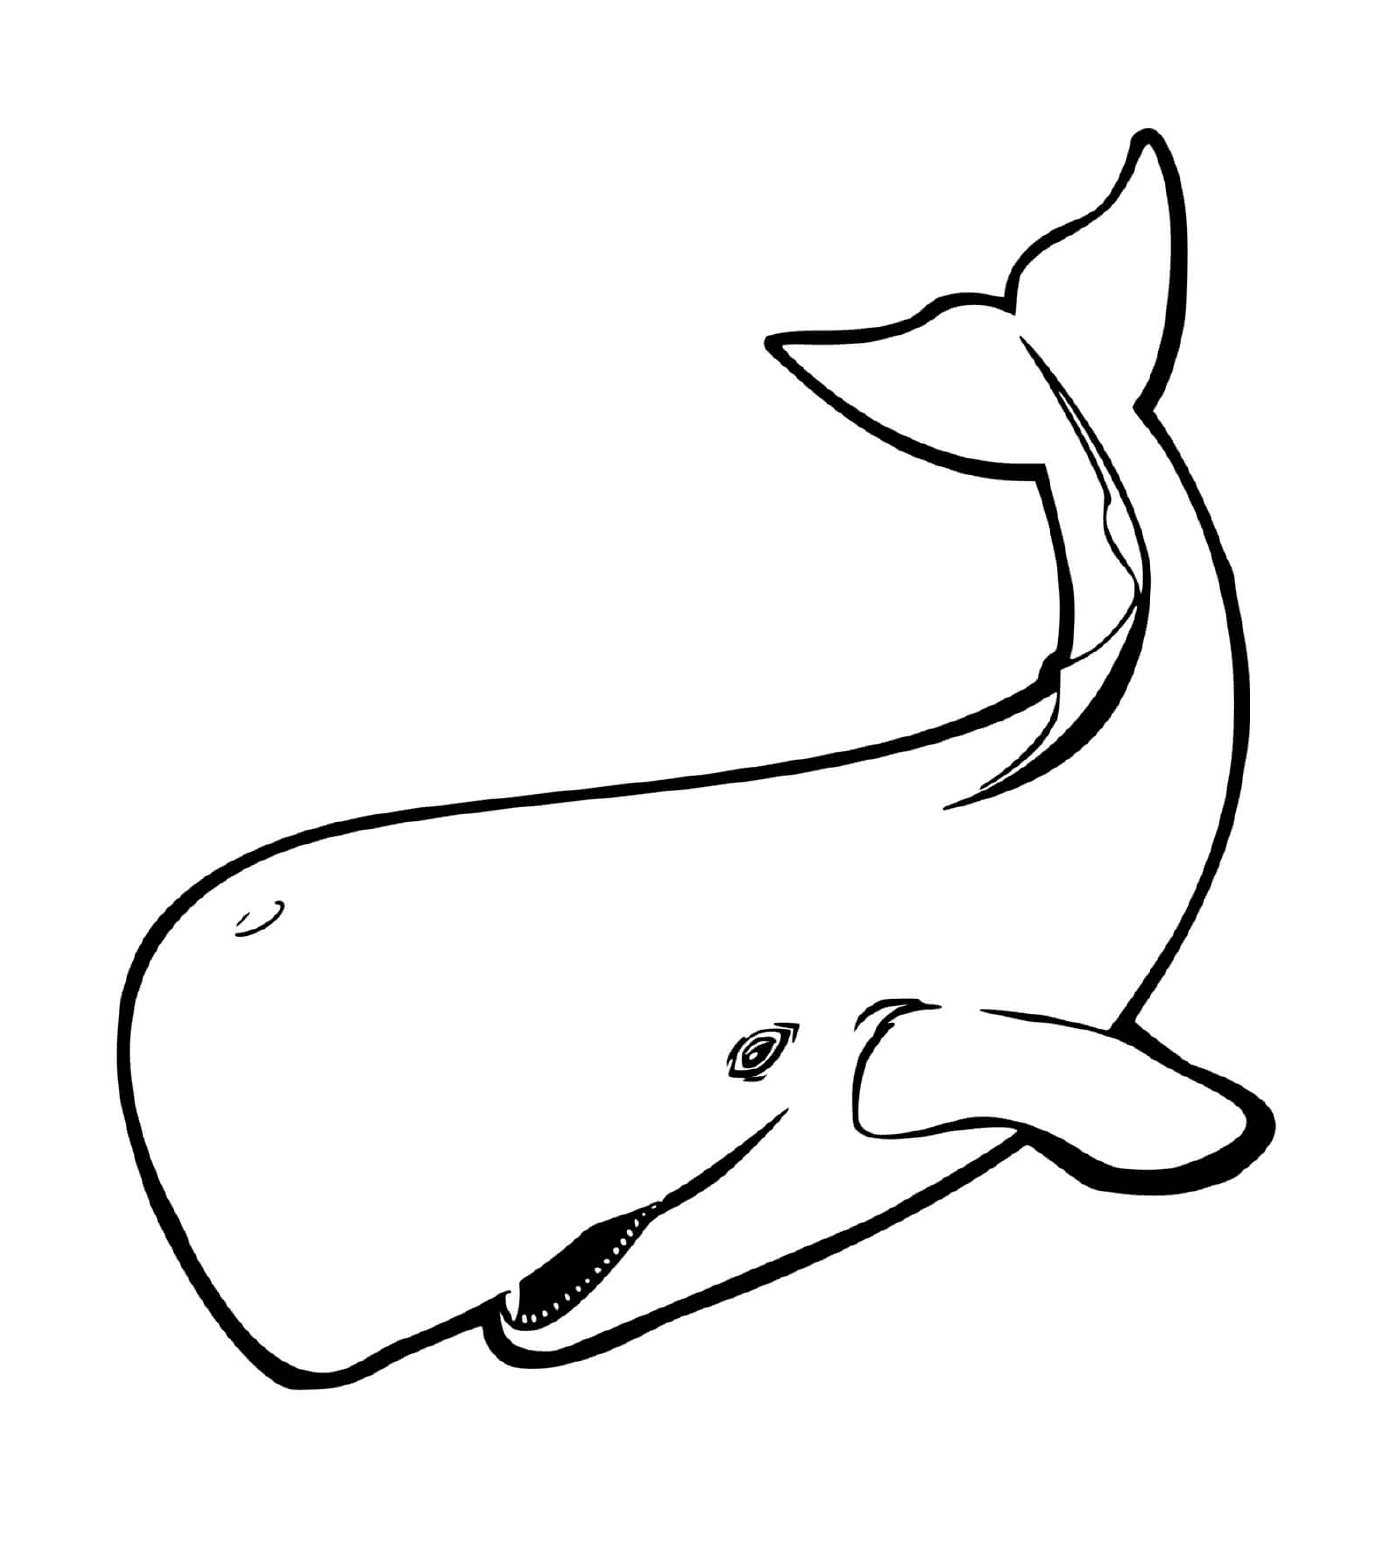  кит 